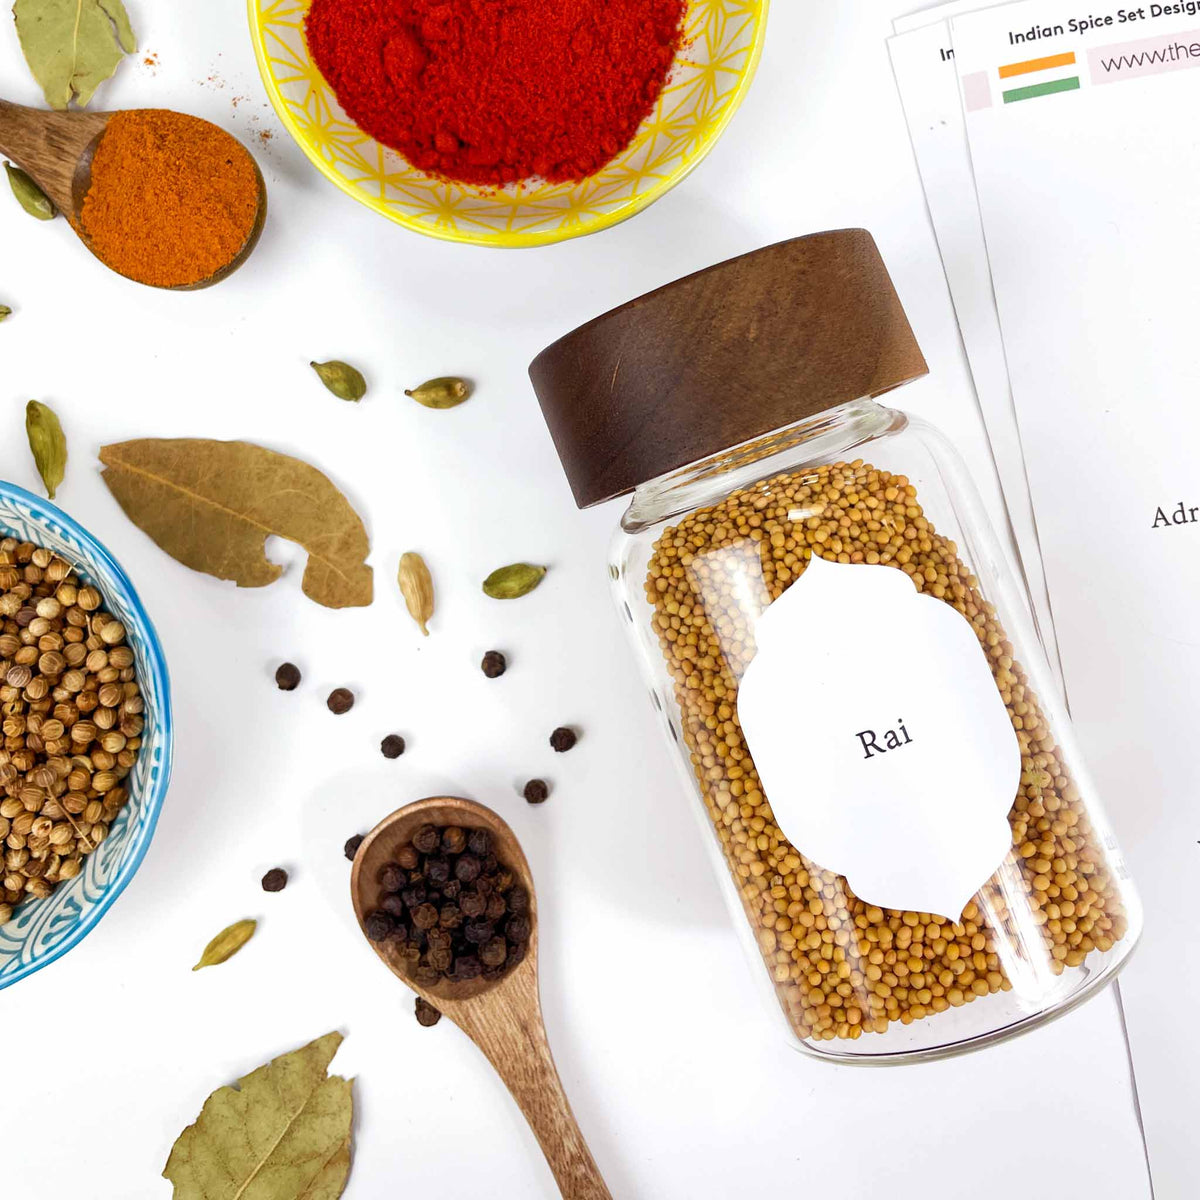 Indian Spice Jar Label Set - Design 30 - East Asian Inspired